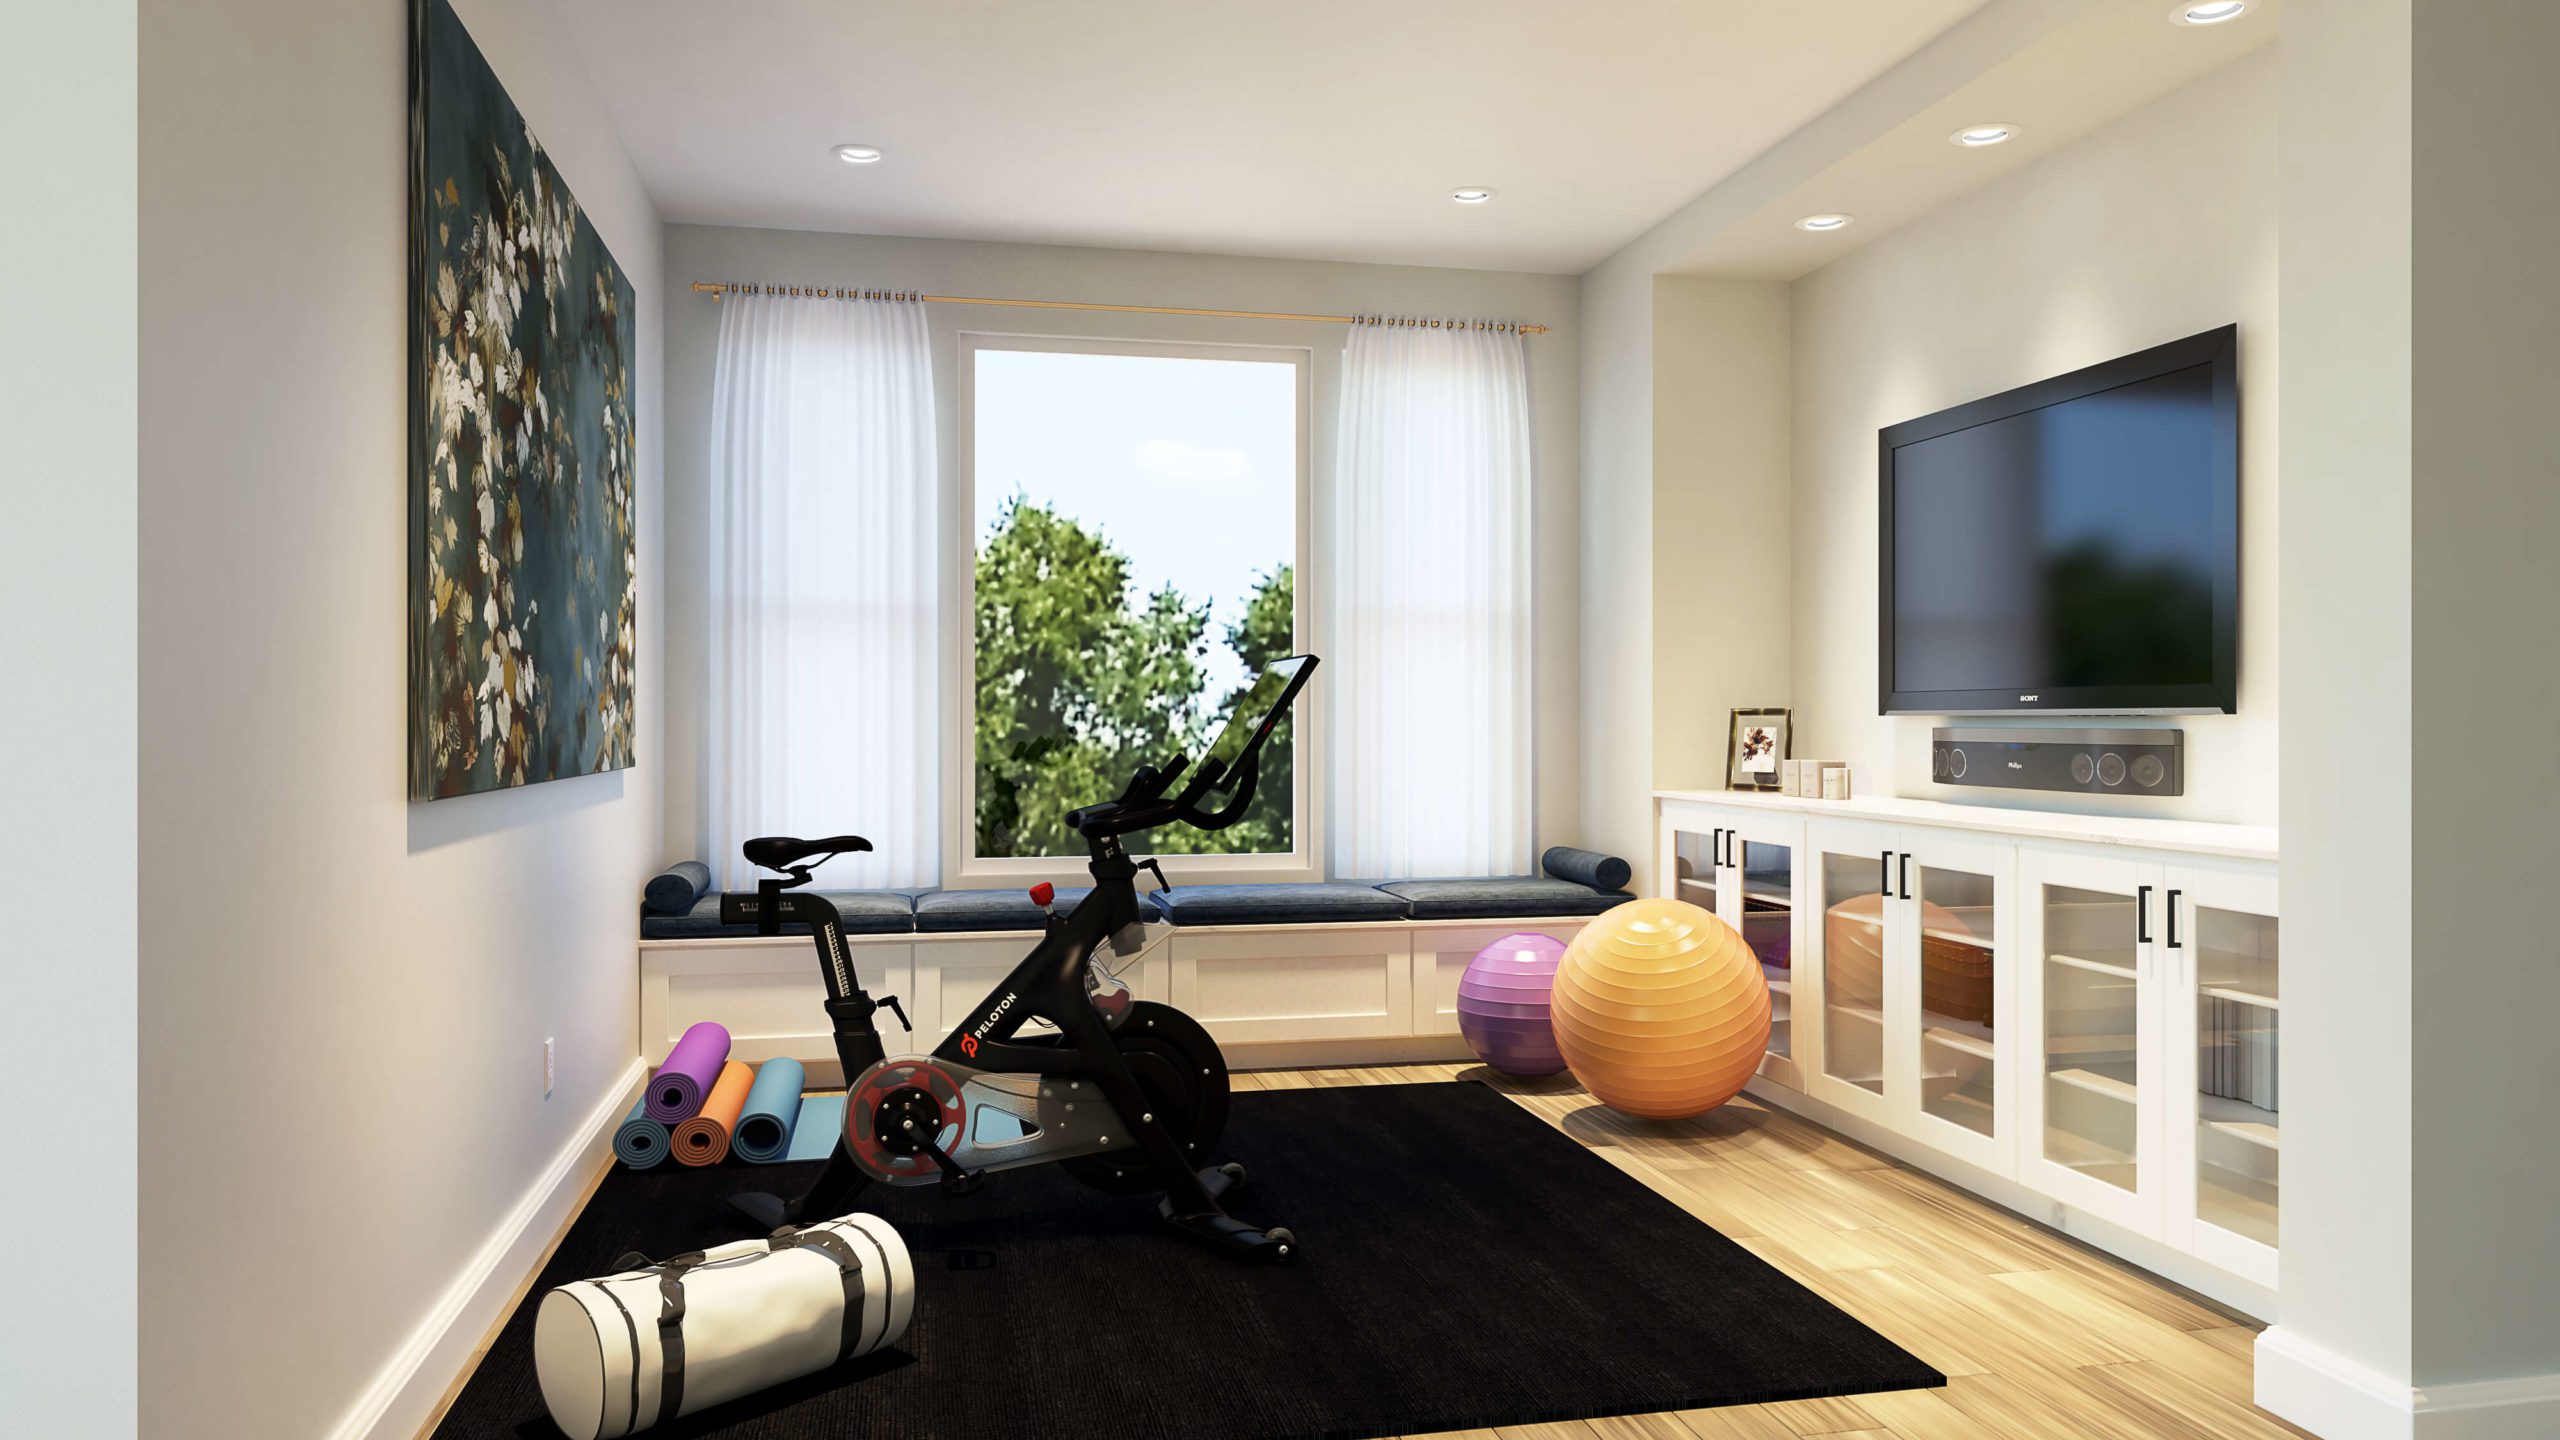 Flex Room Example as a Home Gym